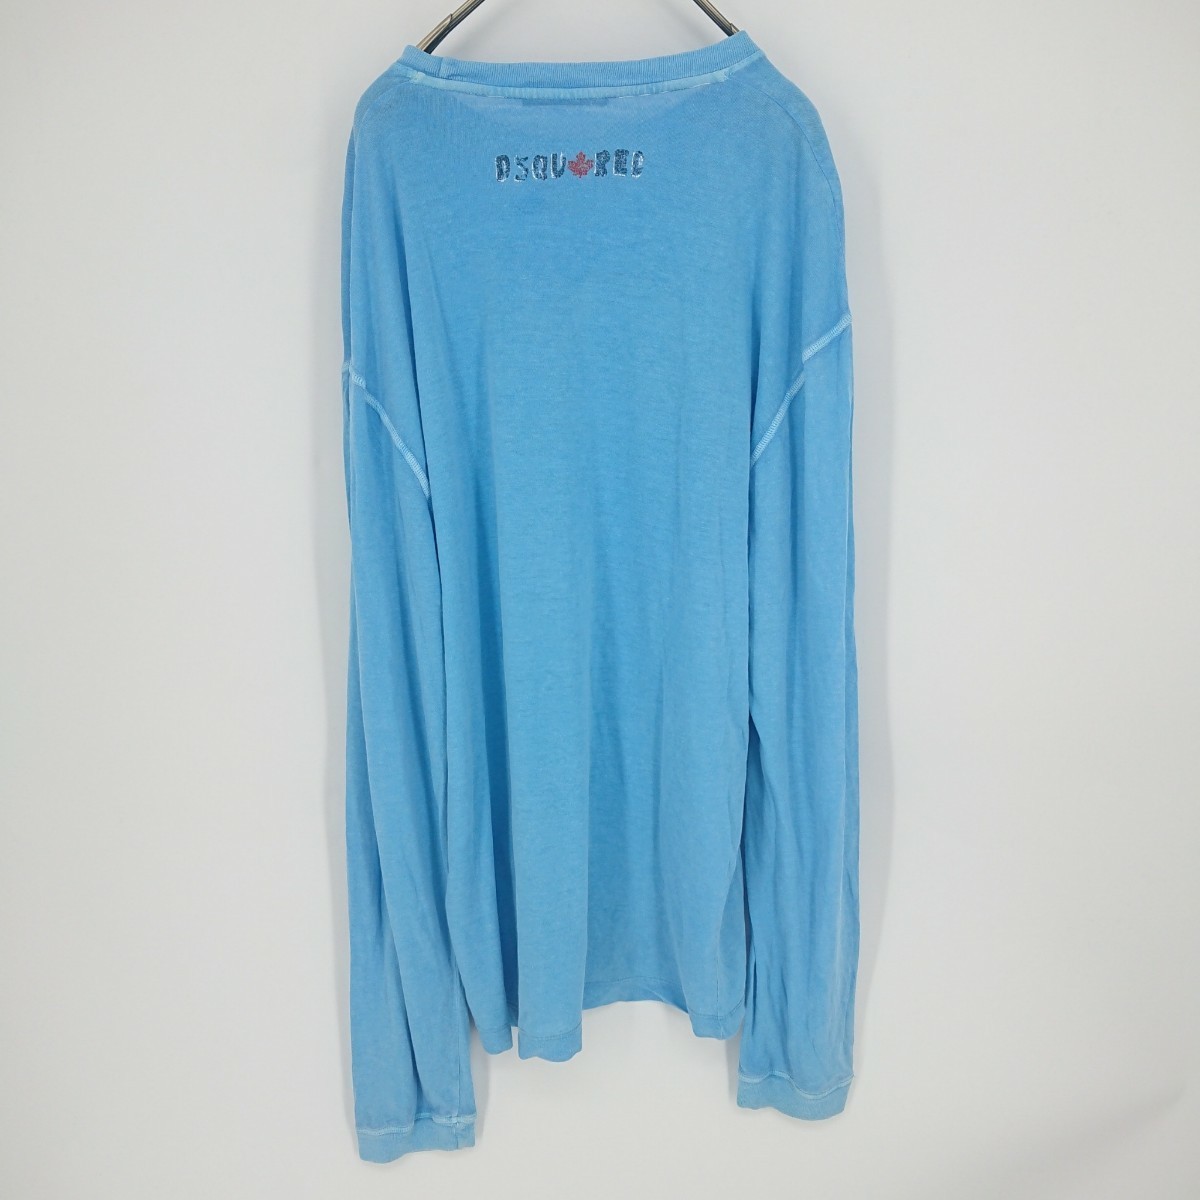 L ディースクエアード Dsquared2 ここのえ Tシャツ カットソー ライトブルー 薄手 リネン混紡 長袖 イタリア製 リユース ultramto ts1157_画像2